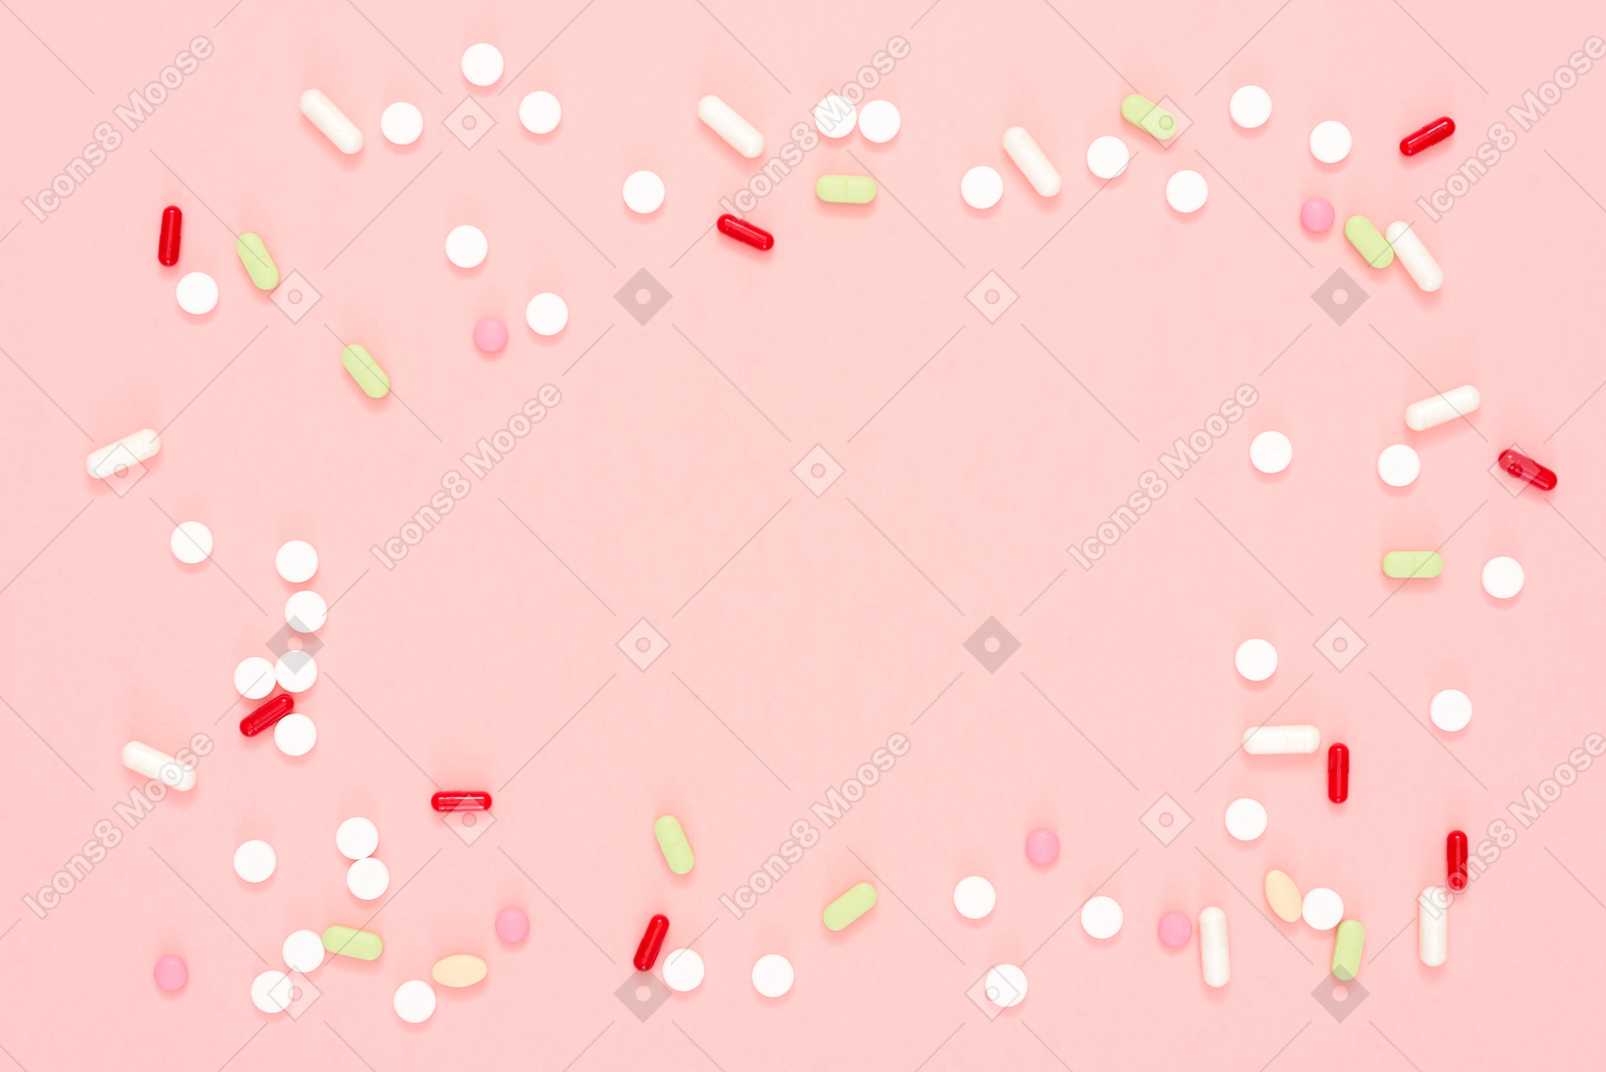 Pilules multicolores dispersées